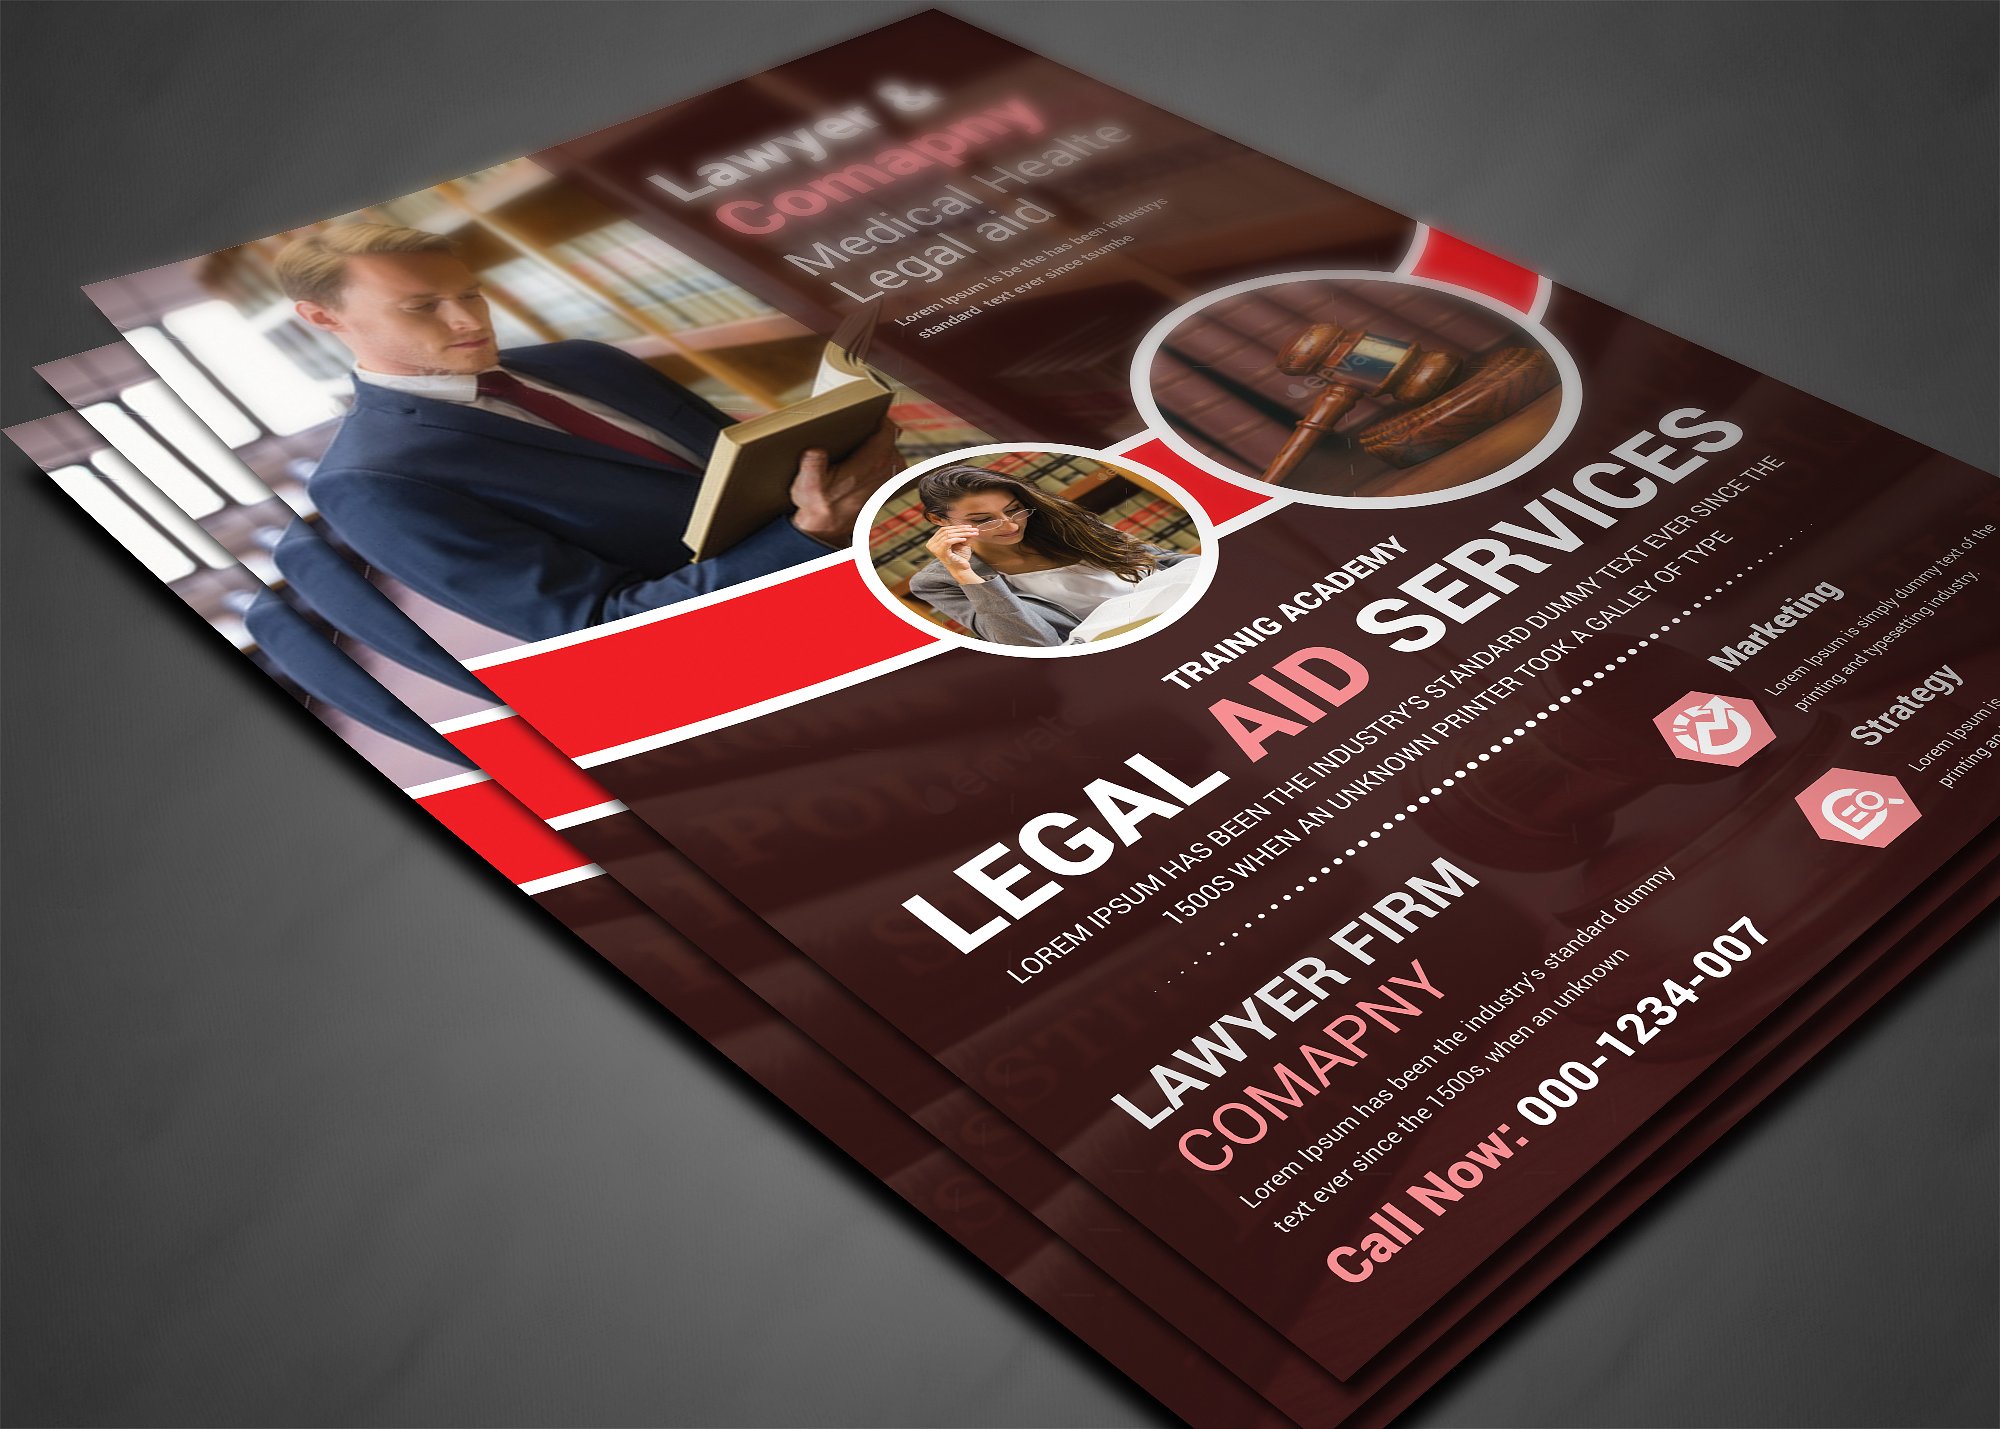 律师事务所宣传海报传单设计模板 Lawyer Firm Business Flyer Template插图(2)